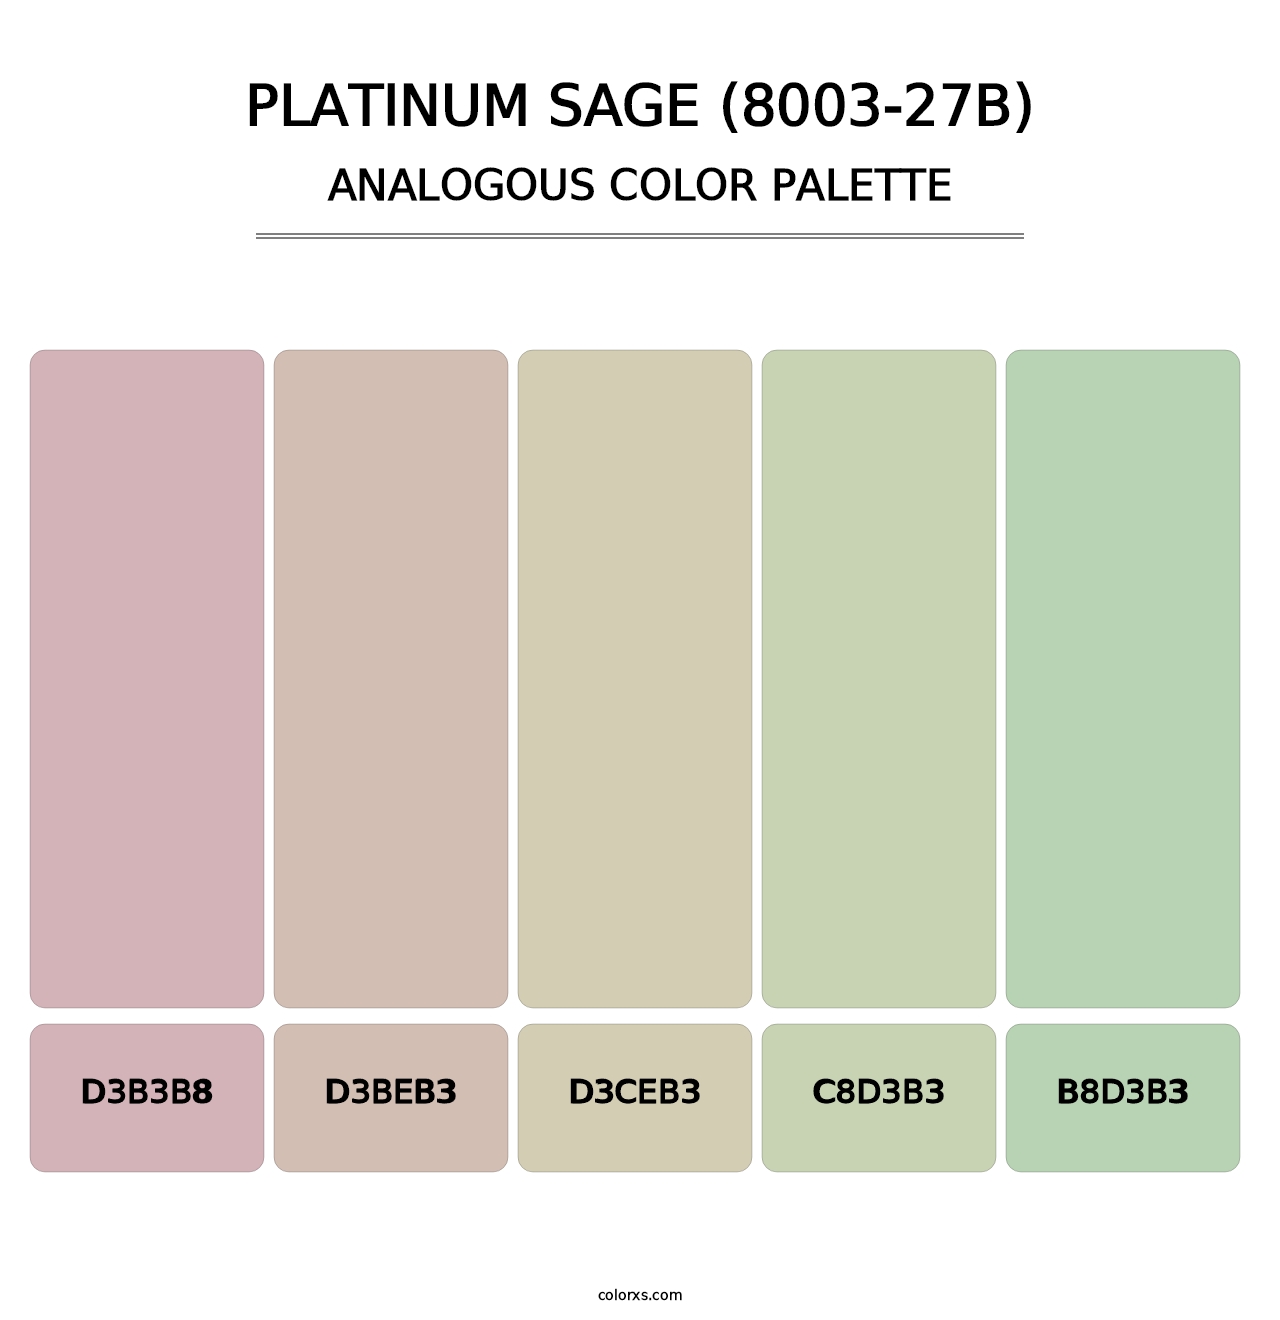 Platinum Sage (8003-27B) - Analogous Color Palette